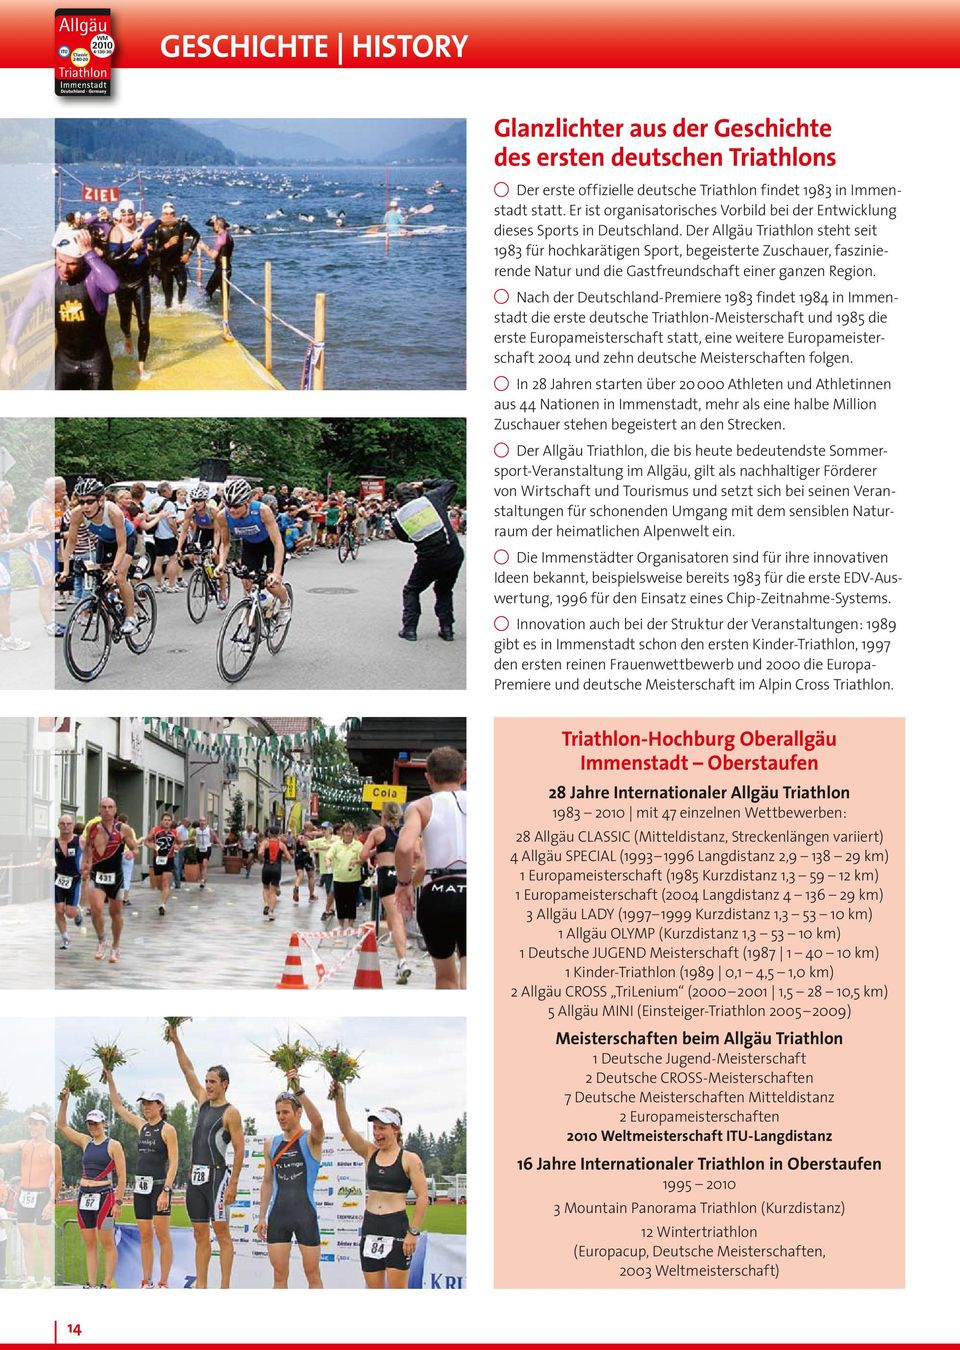 Der Allgäu Triathlon steht seit 1983 für hochkarätigen Sport, begeisterte Zuschauer, faszinierende Natur und die Gastfreundschaft einer ganzen Region.